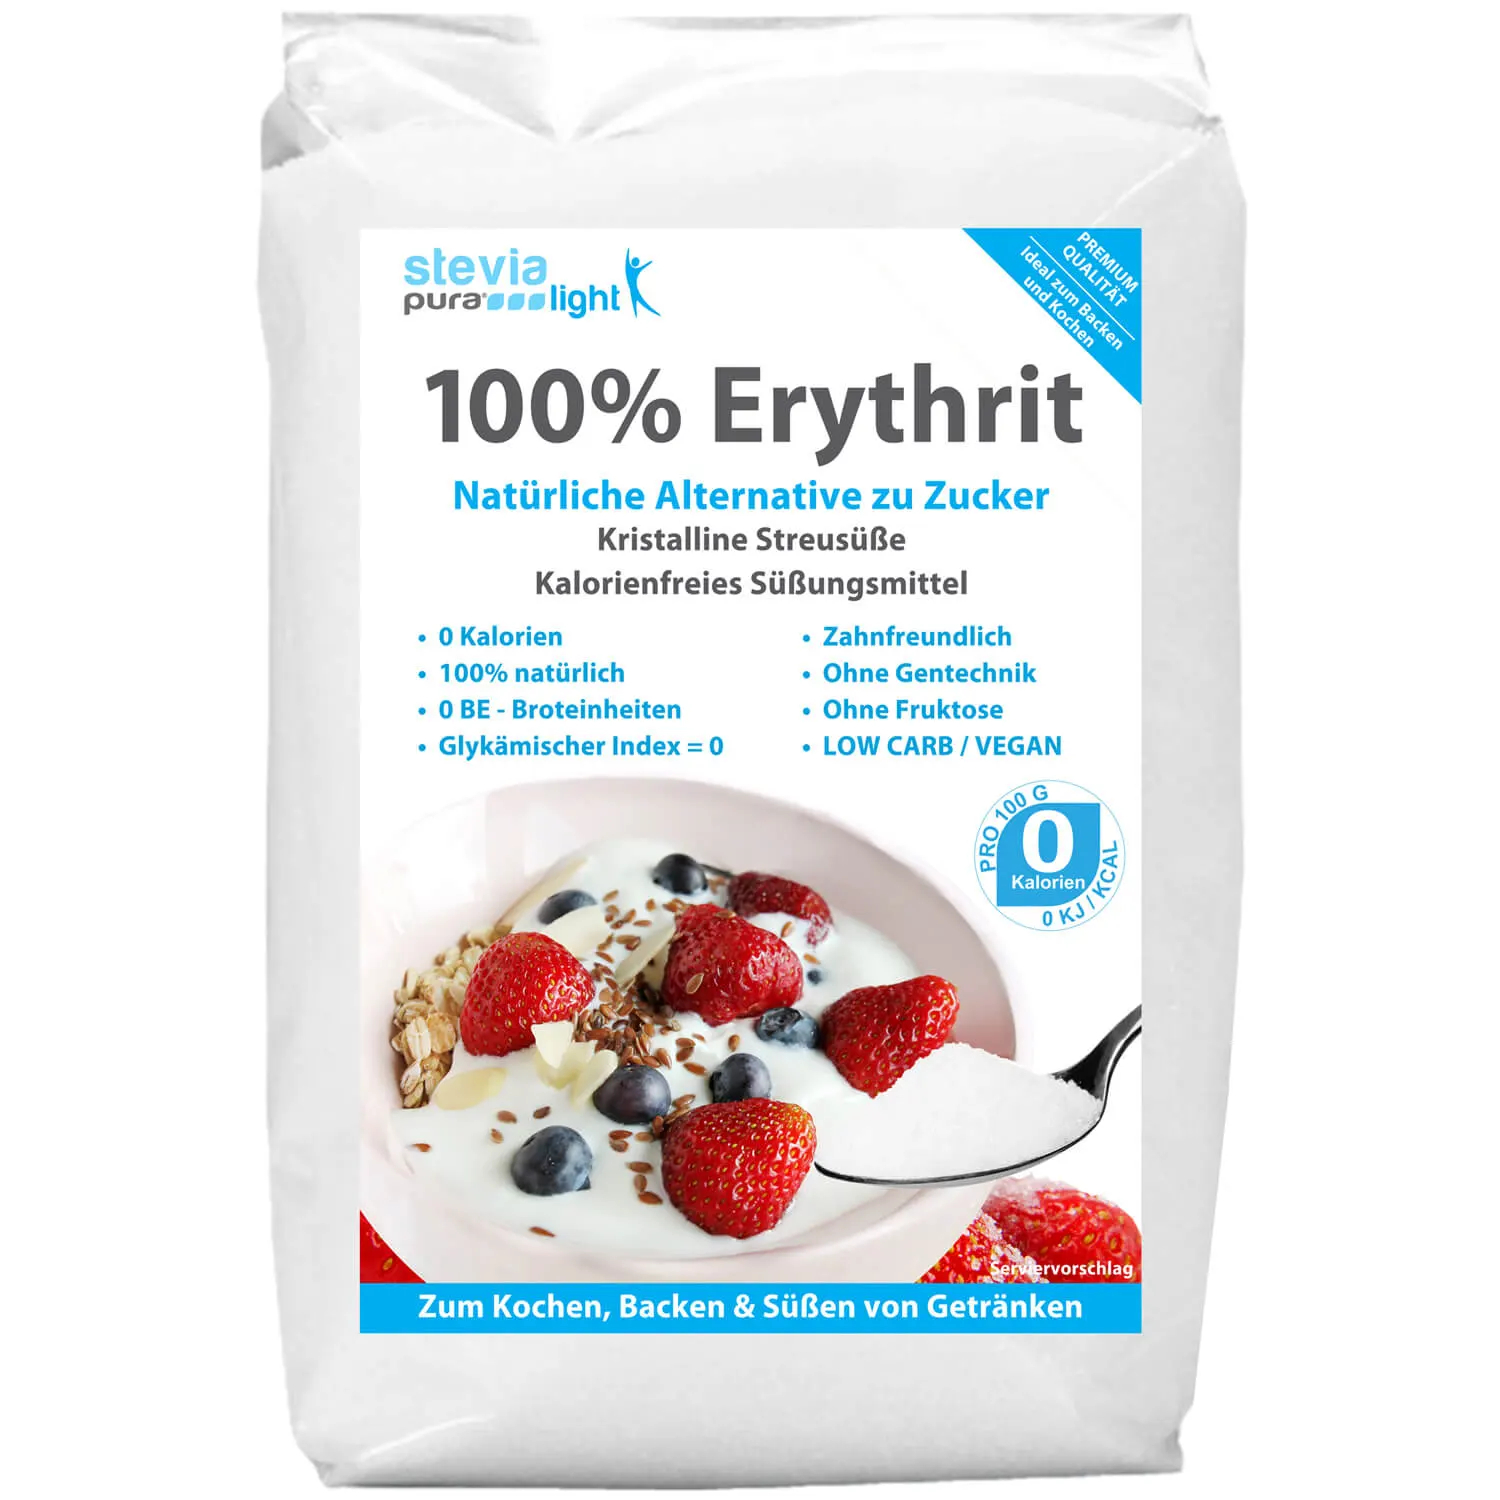 Acquistare Eritritolo: Il sostituto dello zucchero è chiamato anche Eritritolo.